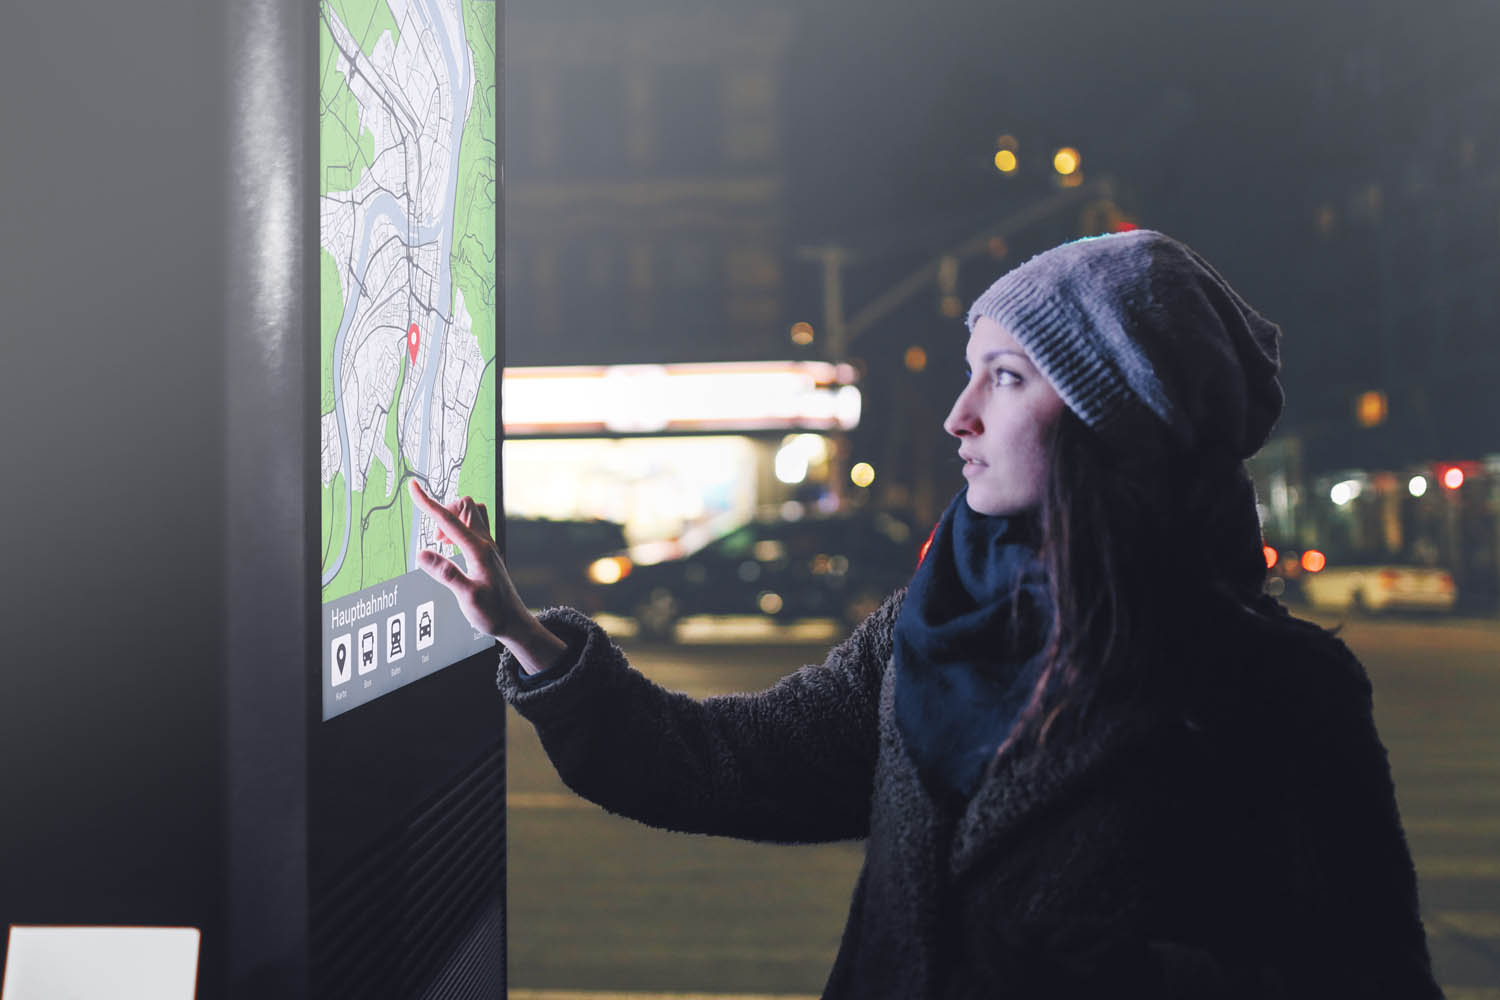 Eine Frau tippt, in der Stadt nachts, an einem Bahnhof, auf eine interaktive outdoor Stele welches eine Karte anzeigt